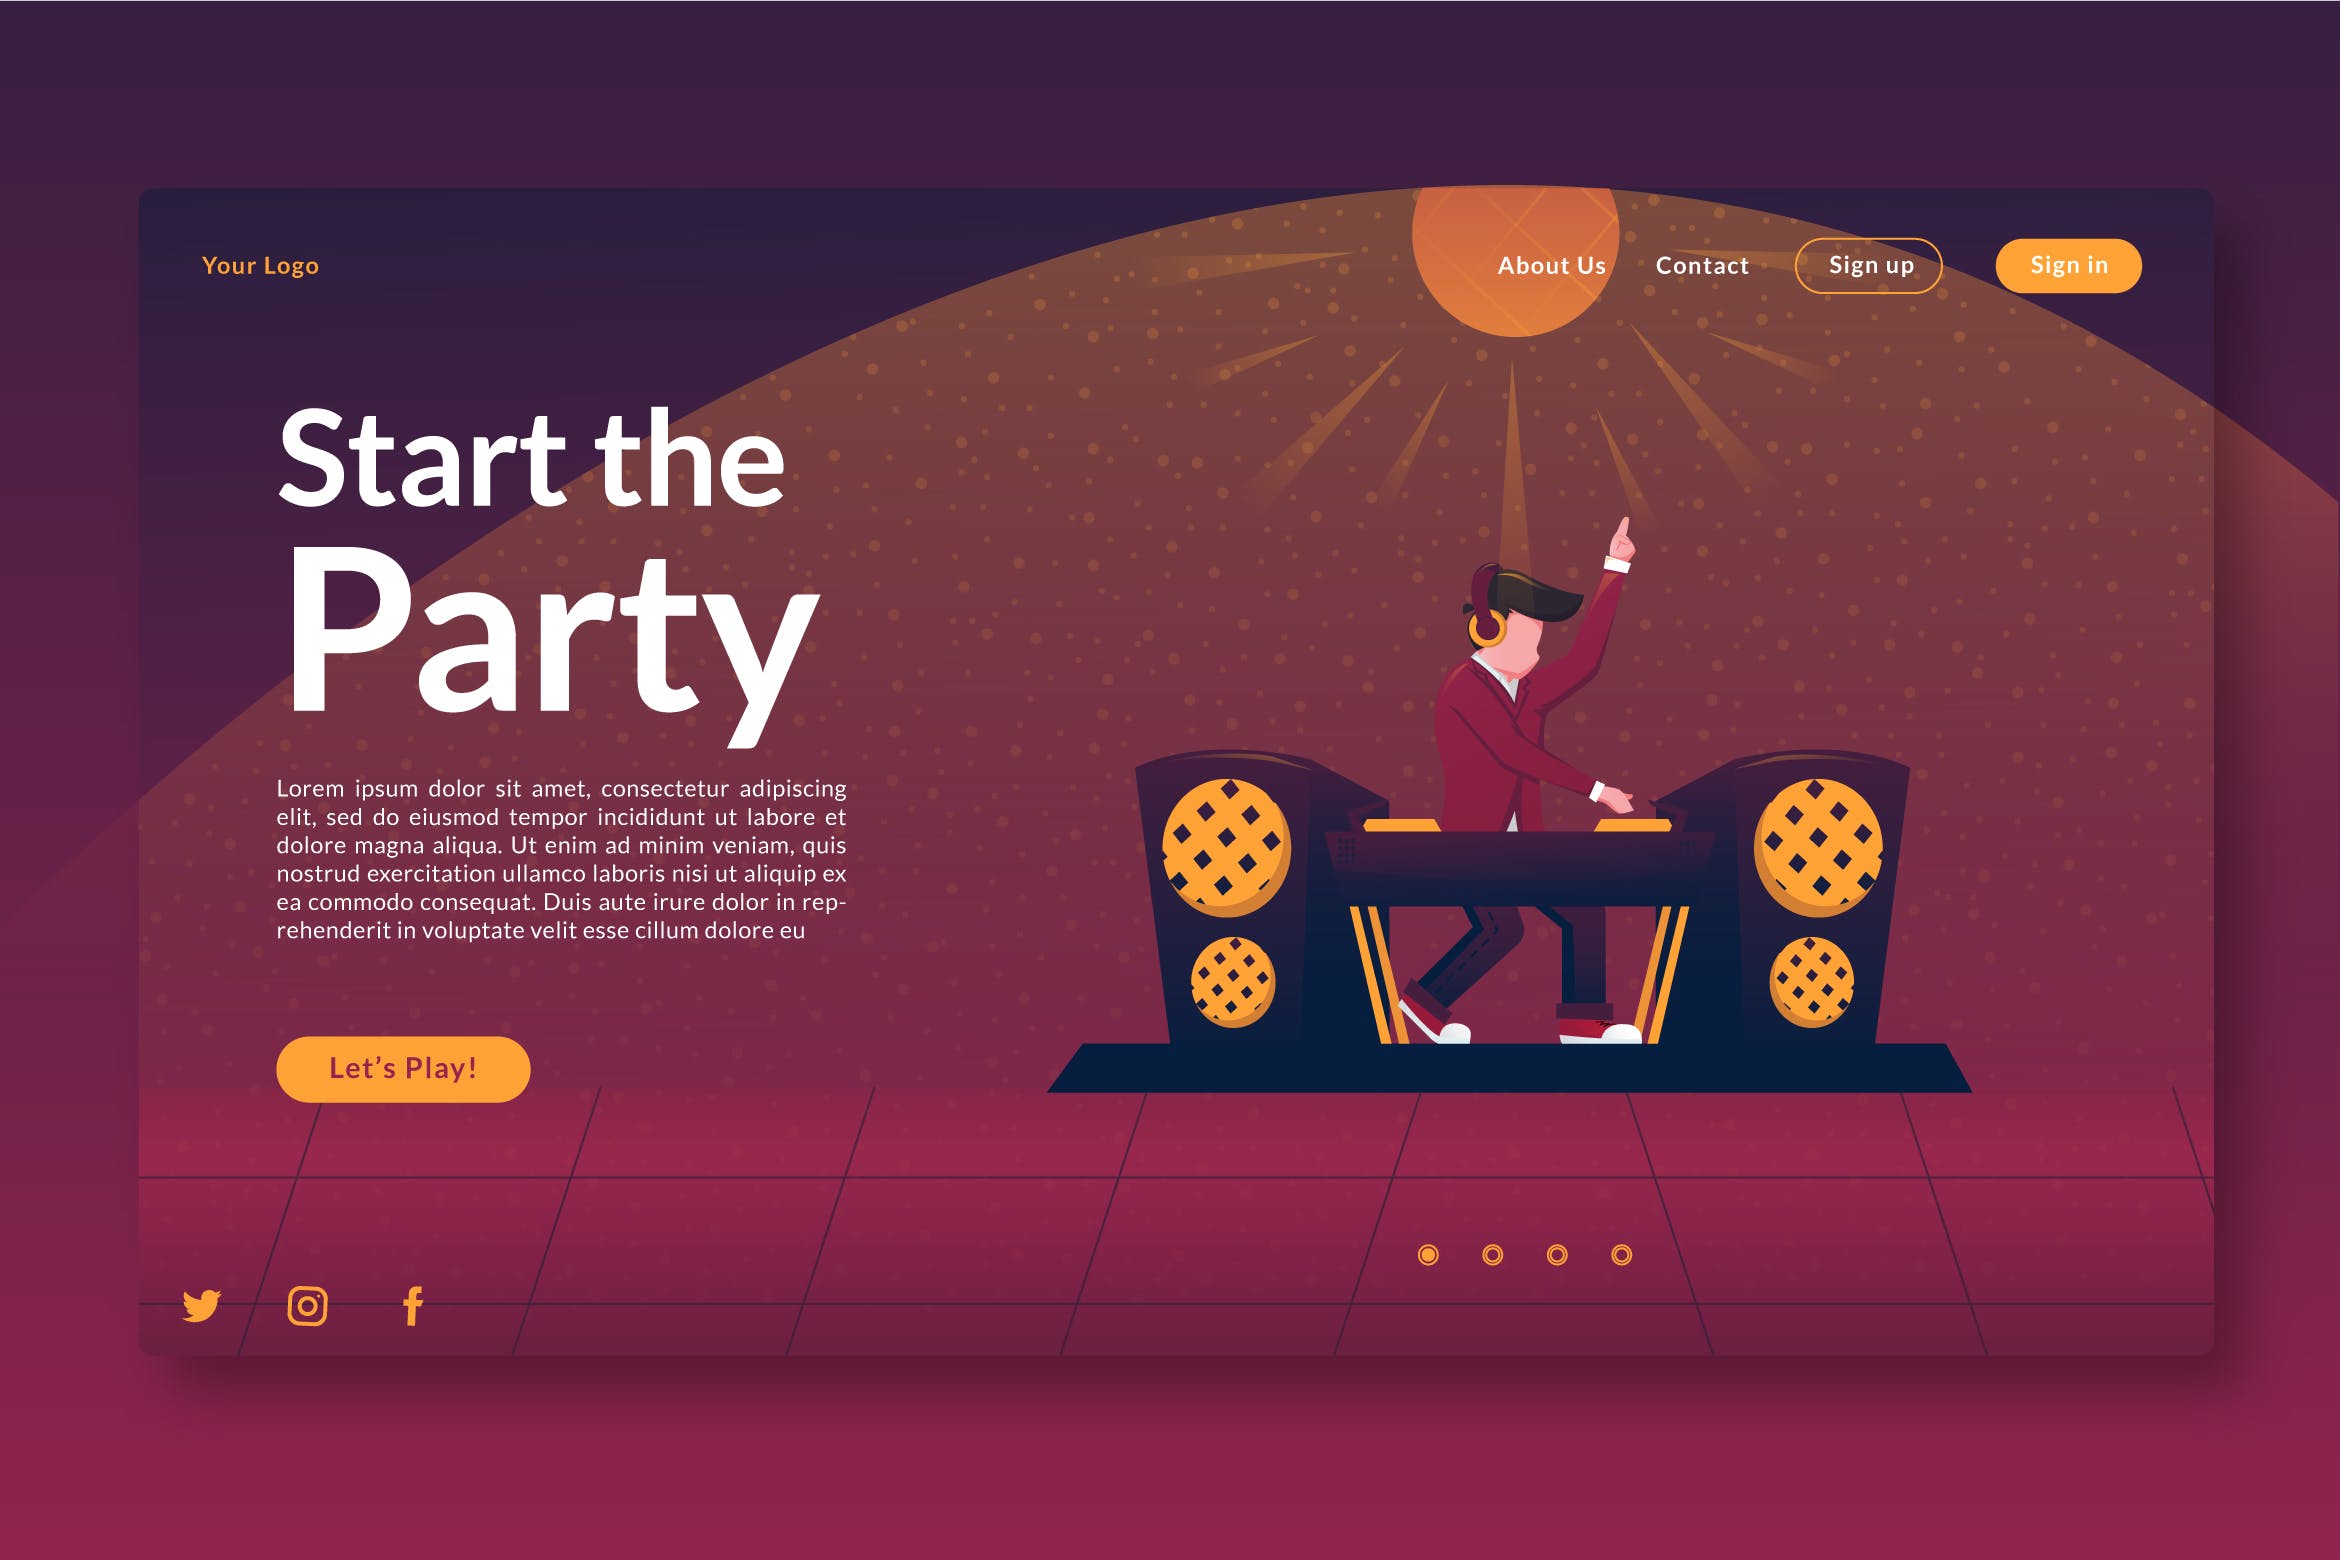 活动派对主题插画网站着陆页设计第一素材精选模板 Start the Party – Landing page GR插图